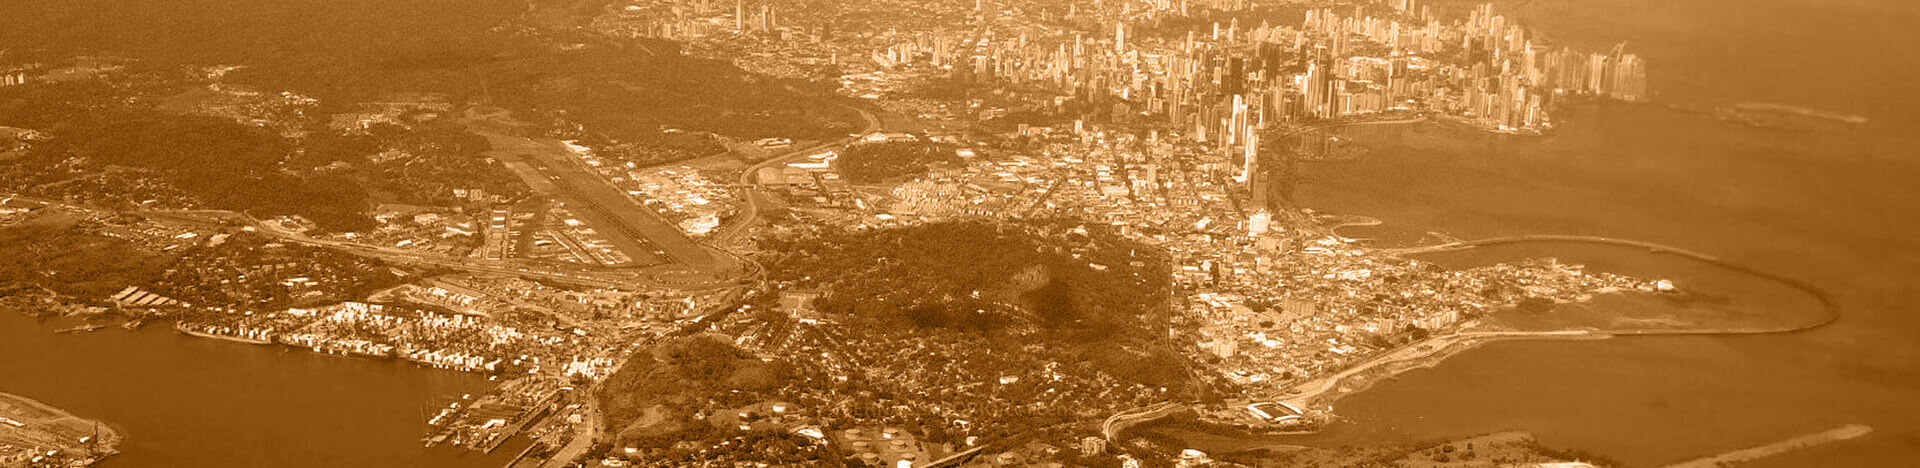 Widok z lotu ptaka na miasto Panama ze złotym overlayem.